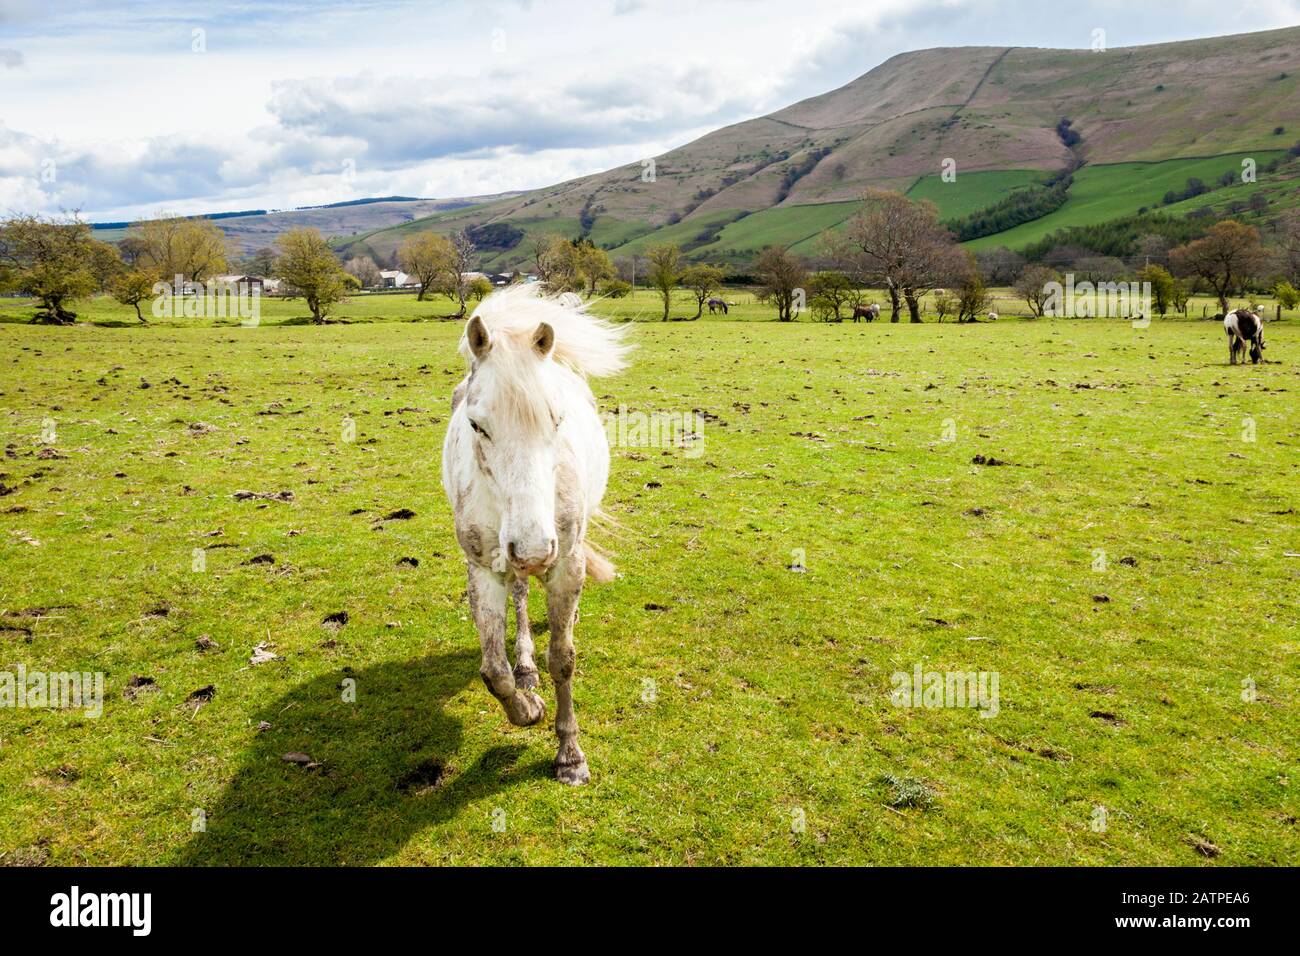 Un cavallo bianco in esecuzione in un campo, vale di Edale, Derbyshire, Peak District, England, Regno Unito Foto Stock